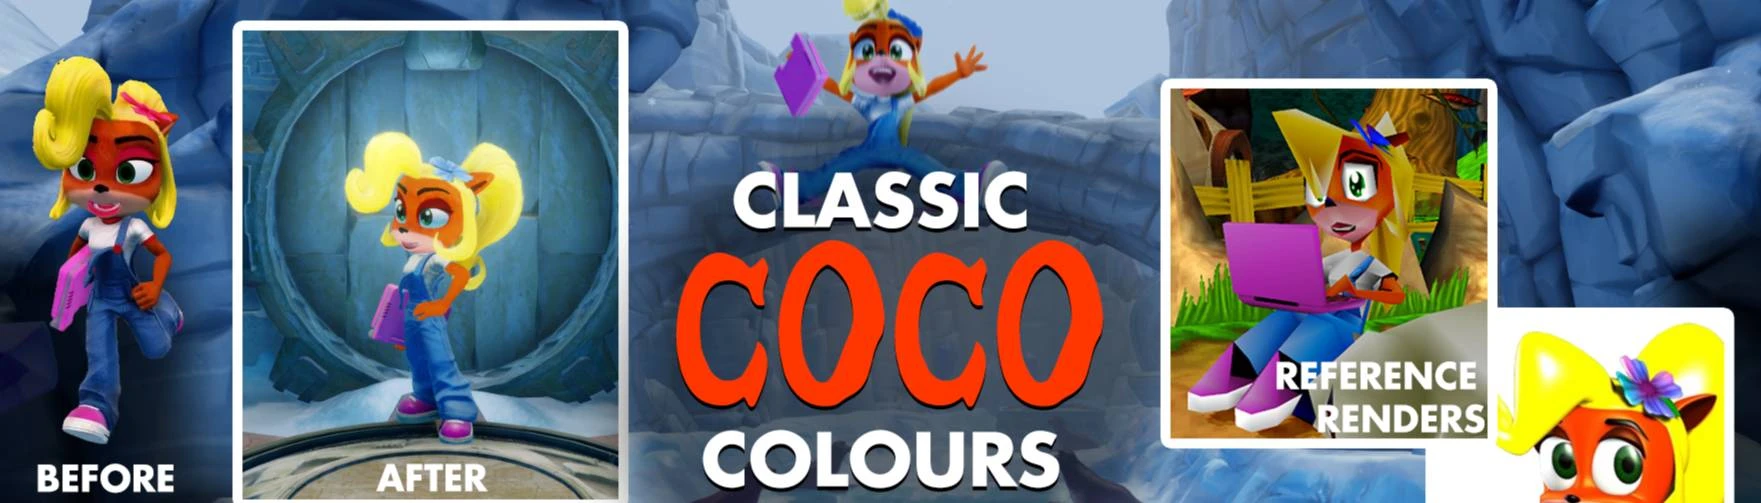 Provenza Moda Living Coco Classic